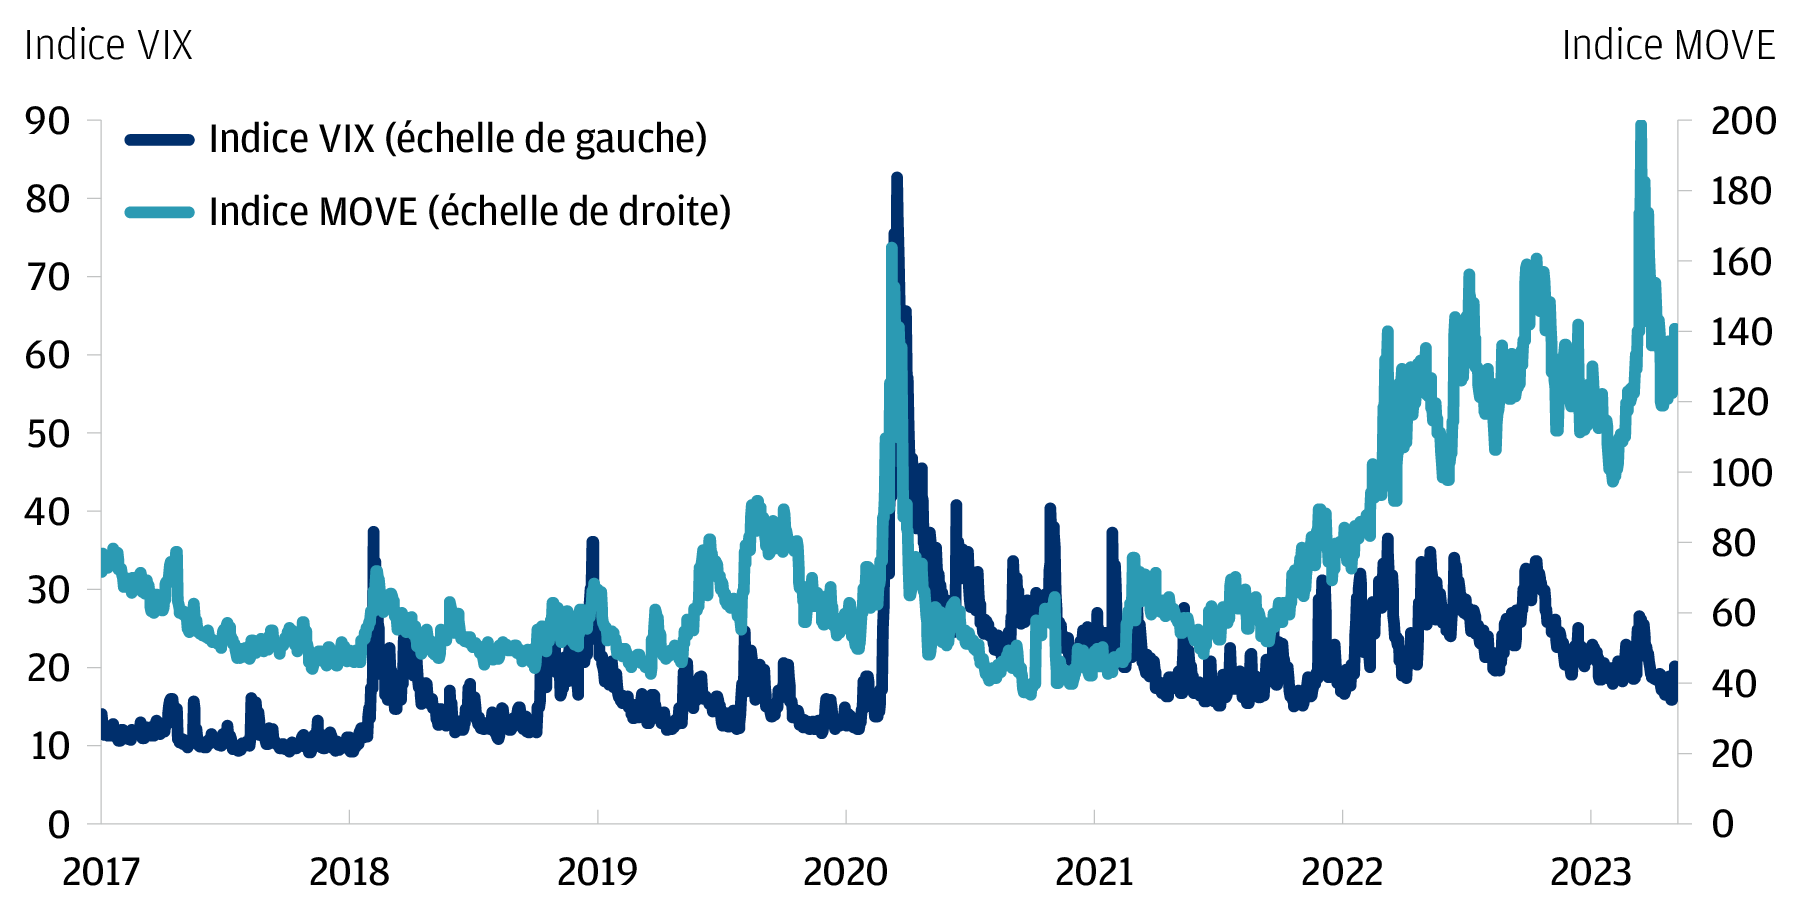 Graphique linéaire des indices VIX (échelle de gauche) et MOVE (échelle de droite) dont les niveaux sont indiqués sur des ordonnées distinctes. Les séries chronologiques sont affichées depuis 2017 jusqu'au 11 mai 2023 sur l'axe des abscisses, en utilisant des données quotidiennes. De 2017 à début février 2020, l'Indice MOVE a oscillé entre 40 et 90. En mars 2020, l'Indice VIX et l'Indice MOVE ont tous deux atteint des niveaux très élevés de respectivement 83 et 164. Depuis, l'Indice VIX évolue généralement dans une fourchette de 15-40. En revanche, l'Indice MOVE a de nouveau atteint des niveaux très élevés en 2022 et reste historiquement élevé. Au cours de la période indiquée, il a atteint un plus haut historique de 199 en mars 2023.